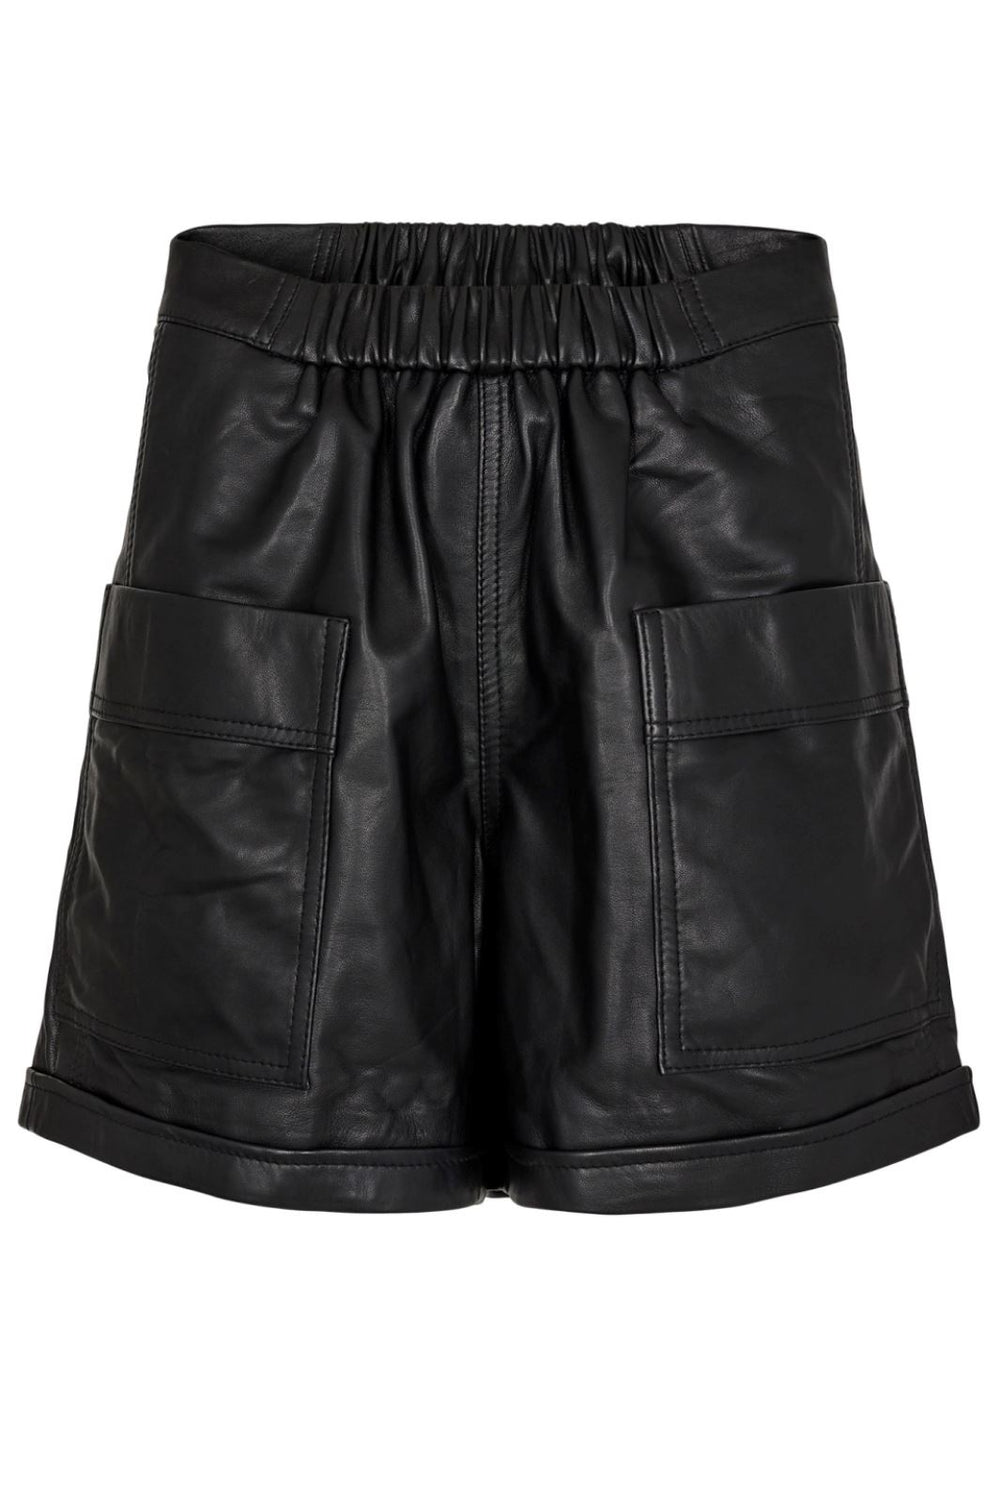 Gossia - ThillaGO Leather Shorts - Black Shorts 